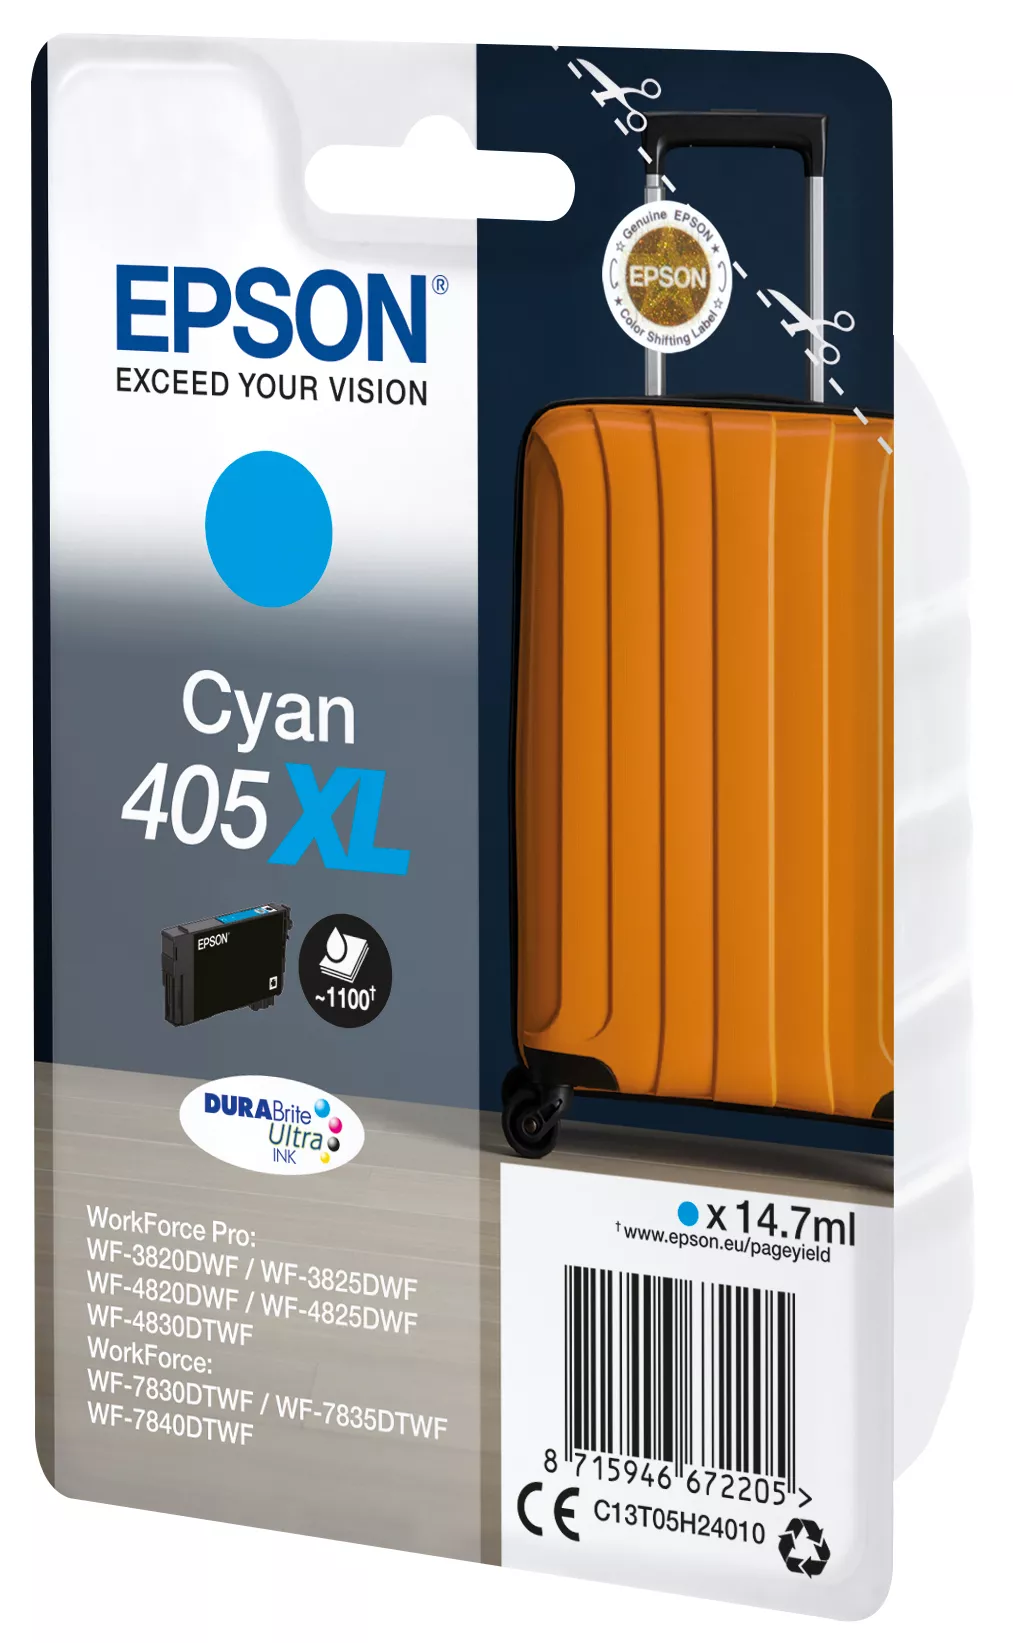 Achat EPSON Singlepack Cyan 405XL DURABrite Ultra Ink et autres produits de la marque Epson